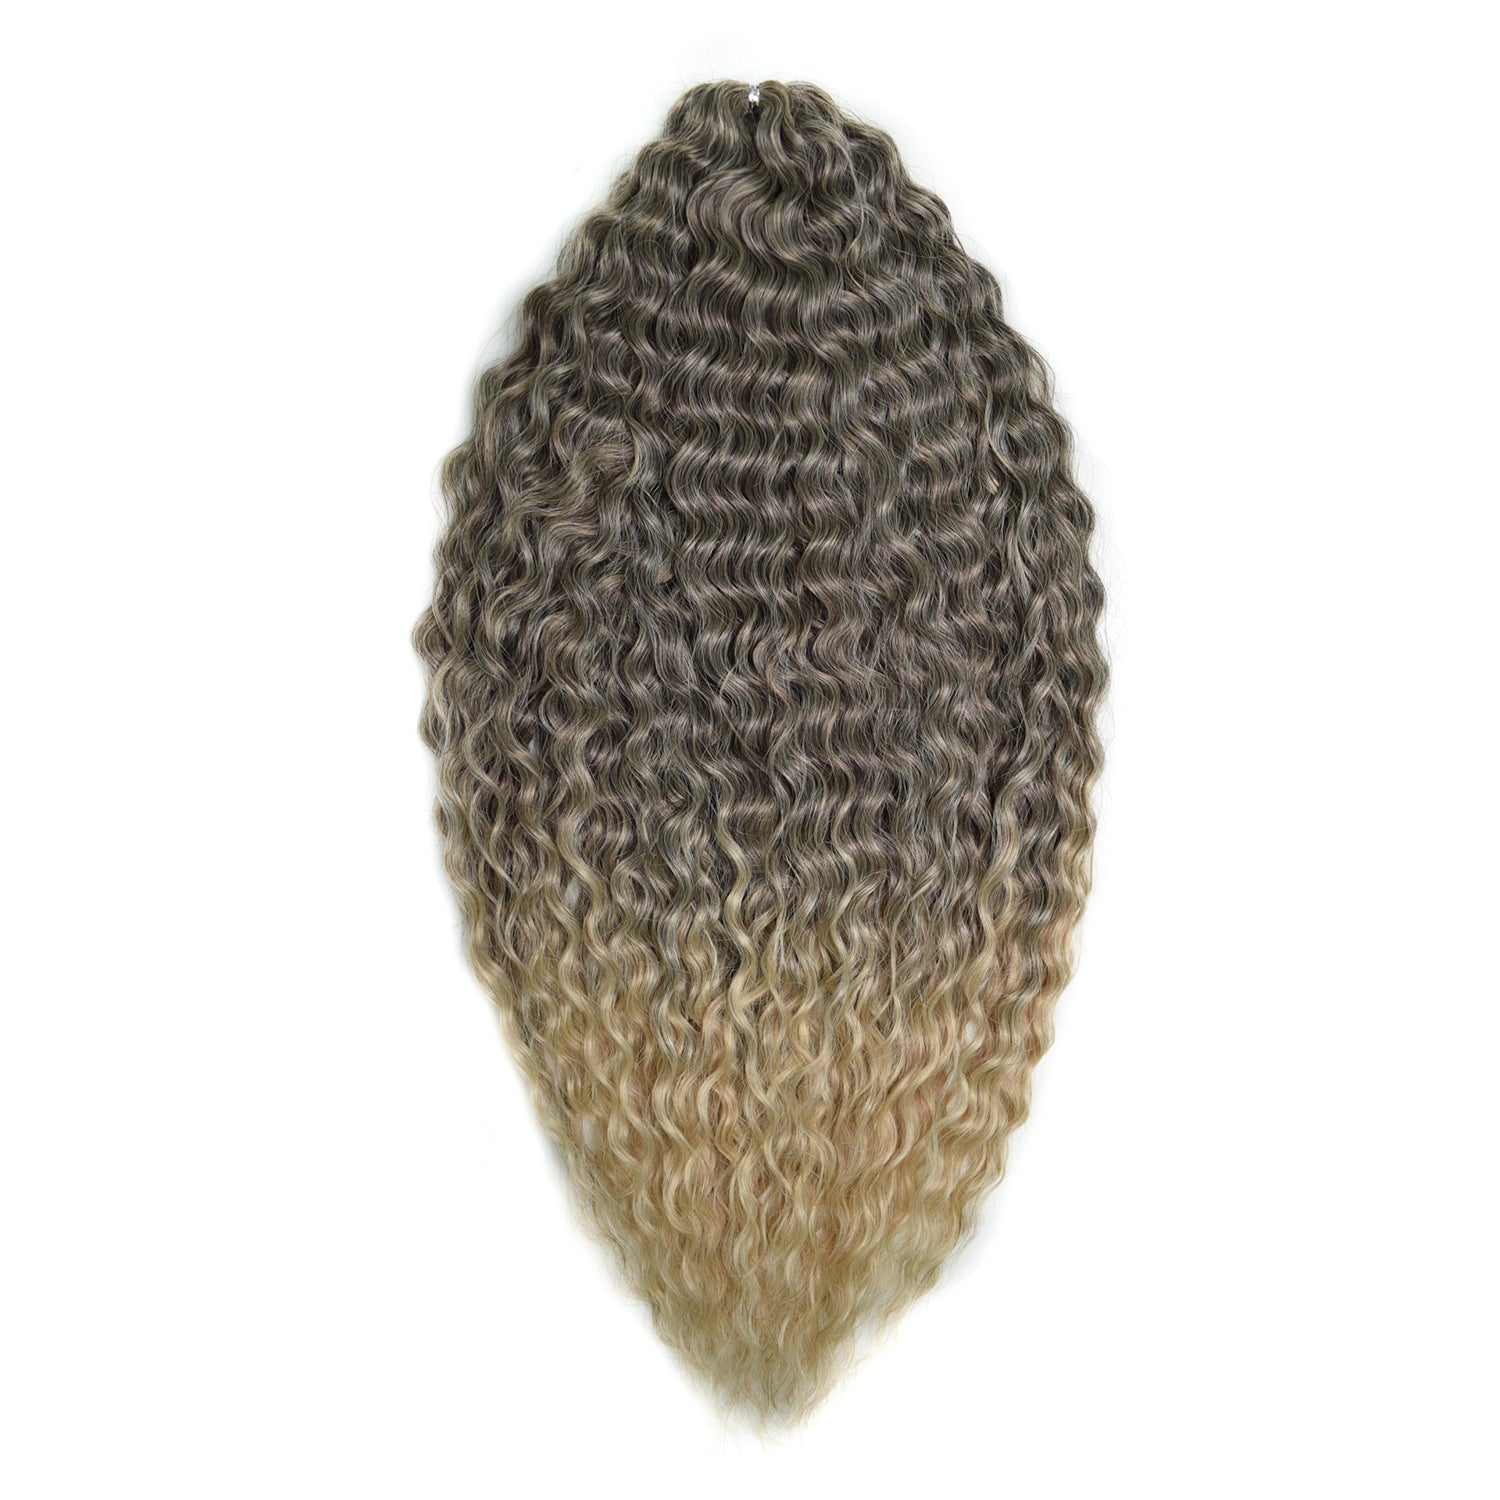 Афрокудри для плетения волос Ariel цвет T8 59 темно русый 55см вес 300г афрокудри для плетения волос ariel ариэль fire оранжевый длина 66см вес 300г